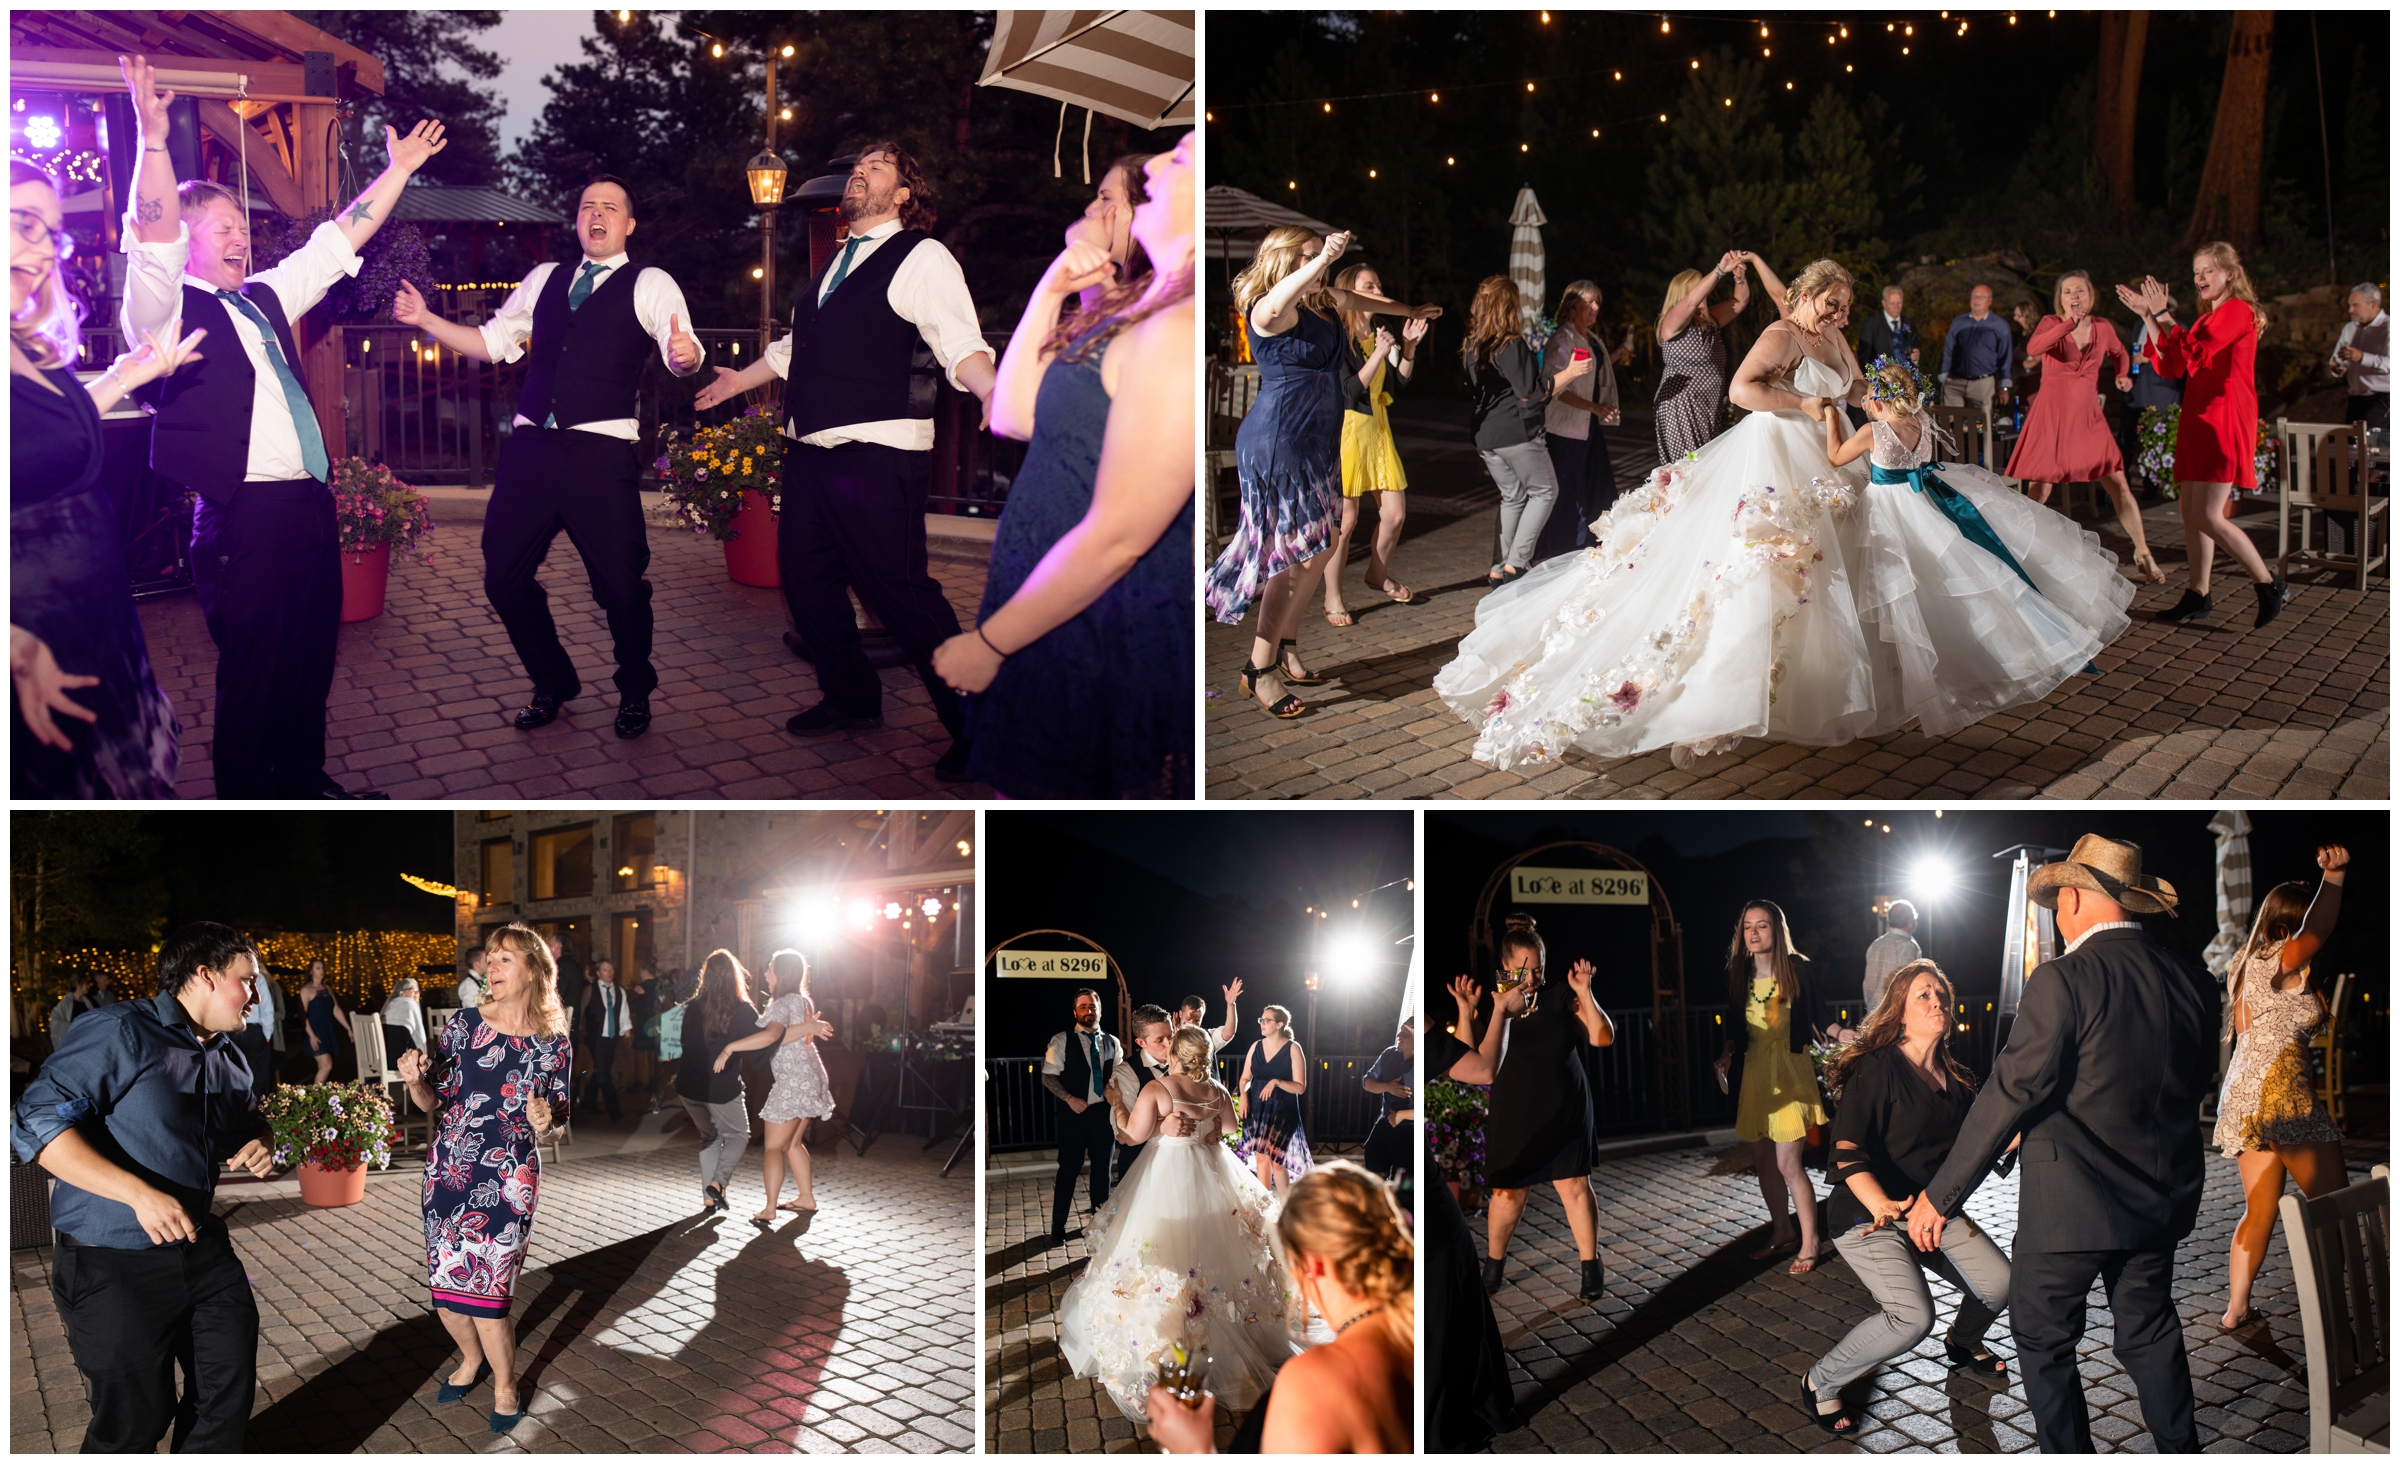 outdoor wedding reception dancing photos in Estes Park Colorado 